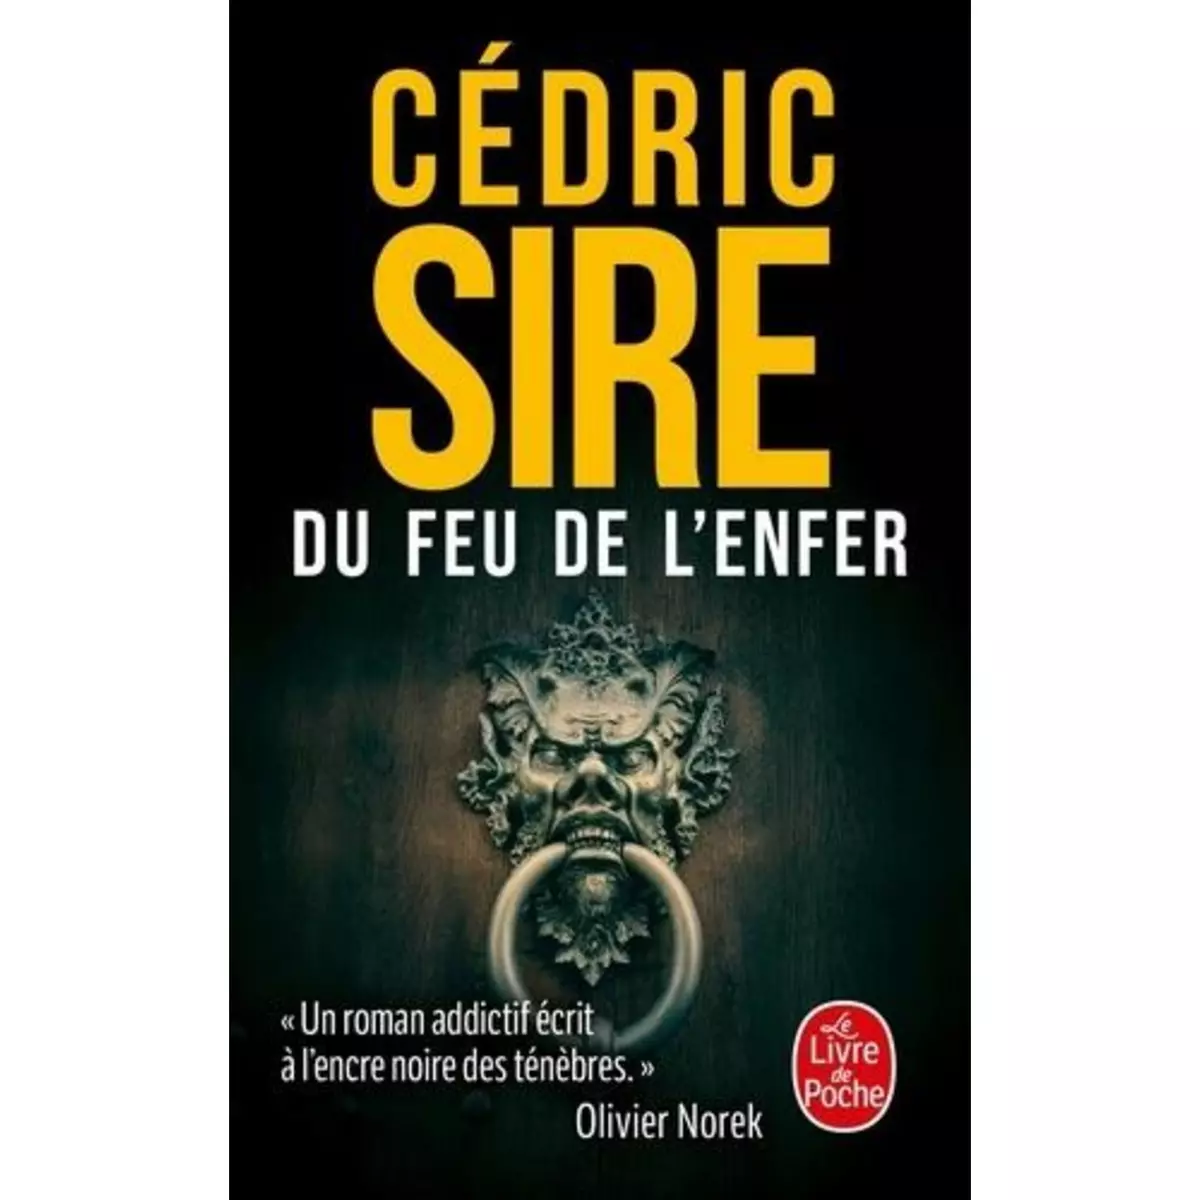  DU FEU DE L'ENFER, Sire Cédric